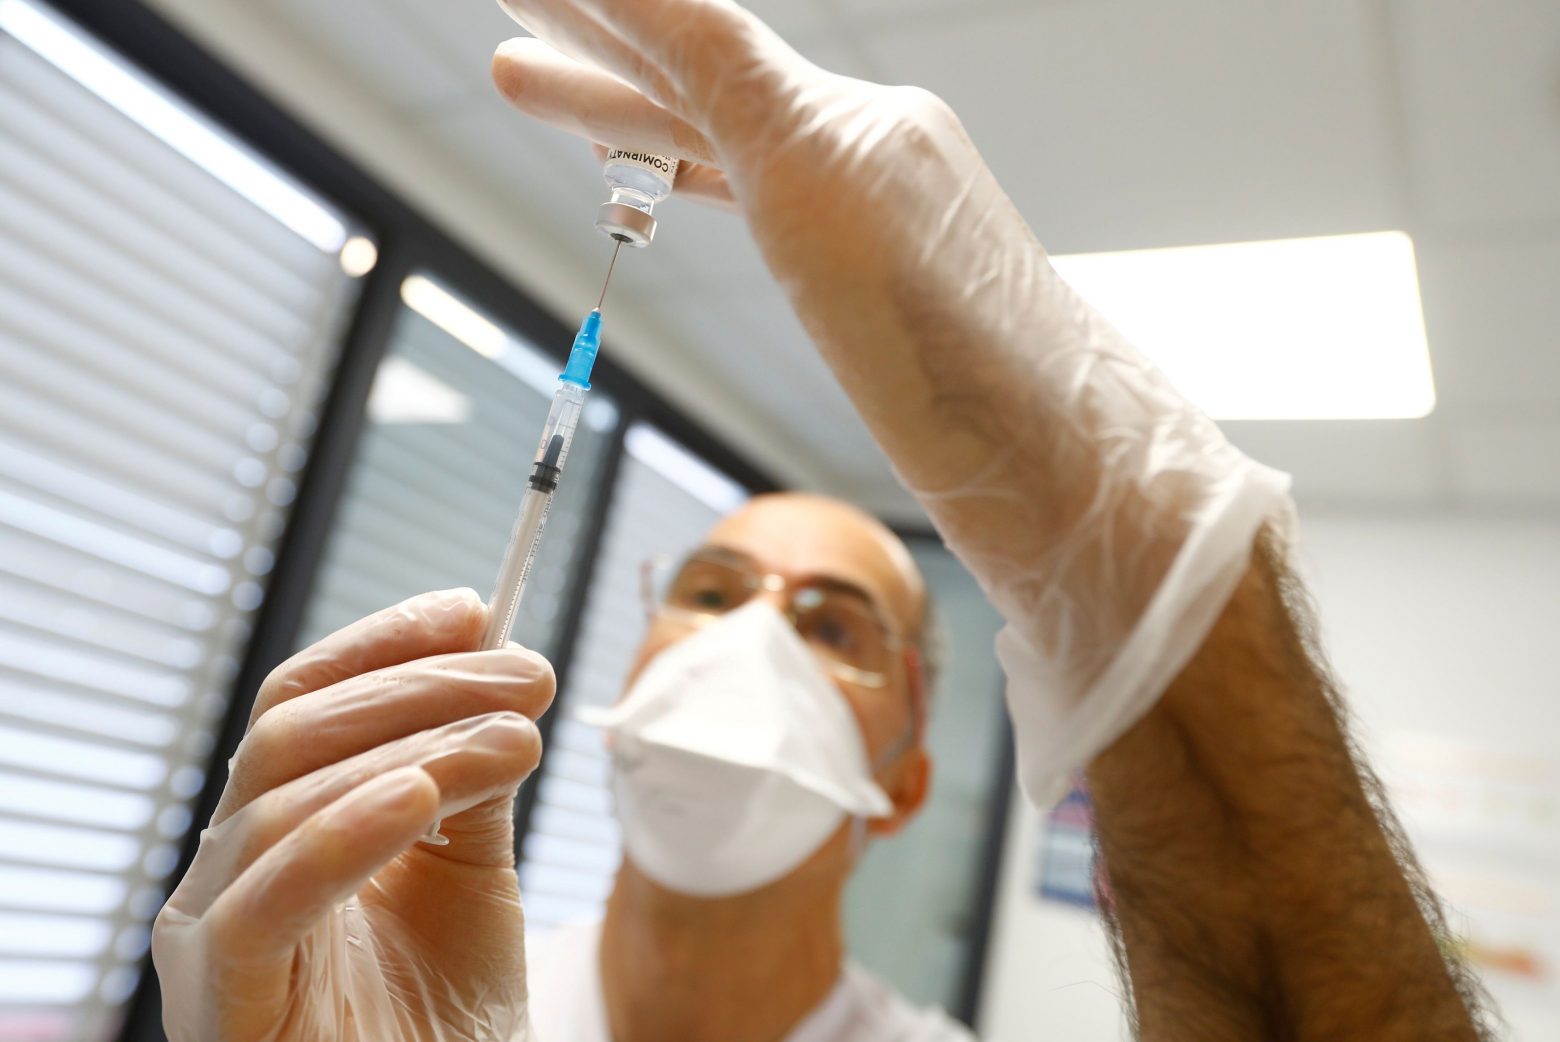 Κύπρος - Ξεκινούν να εμβολιάζουν και ηλικιωμένους με την τρίτη δόση - Ποιο το ηλικιακό όριο